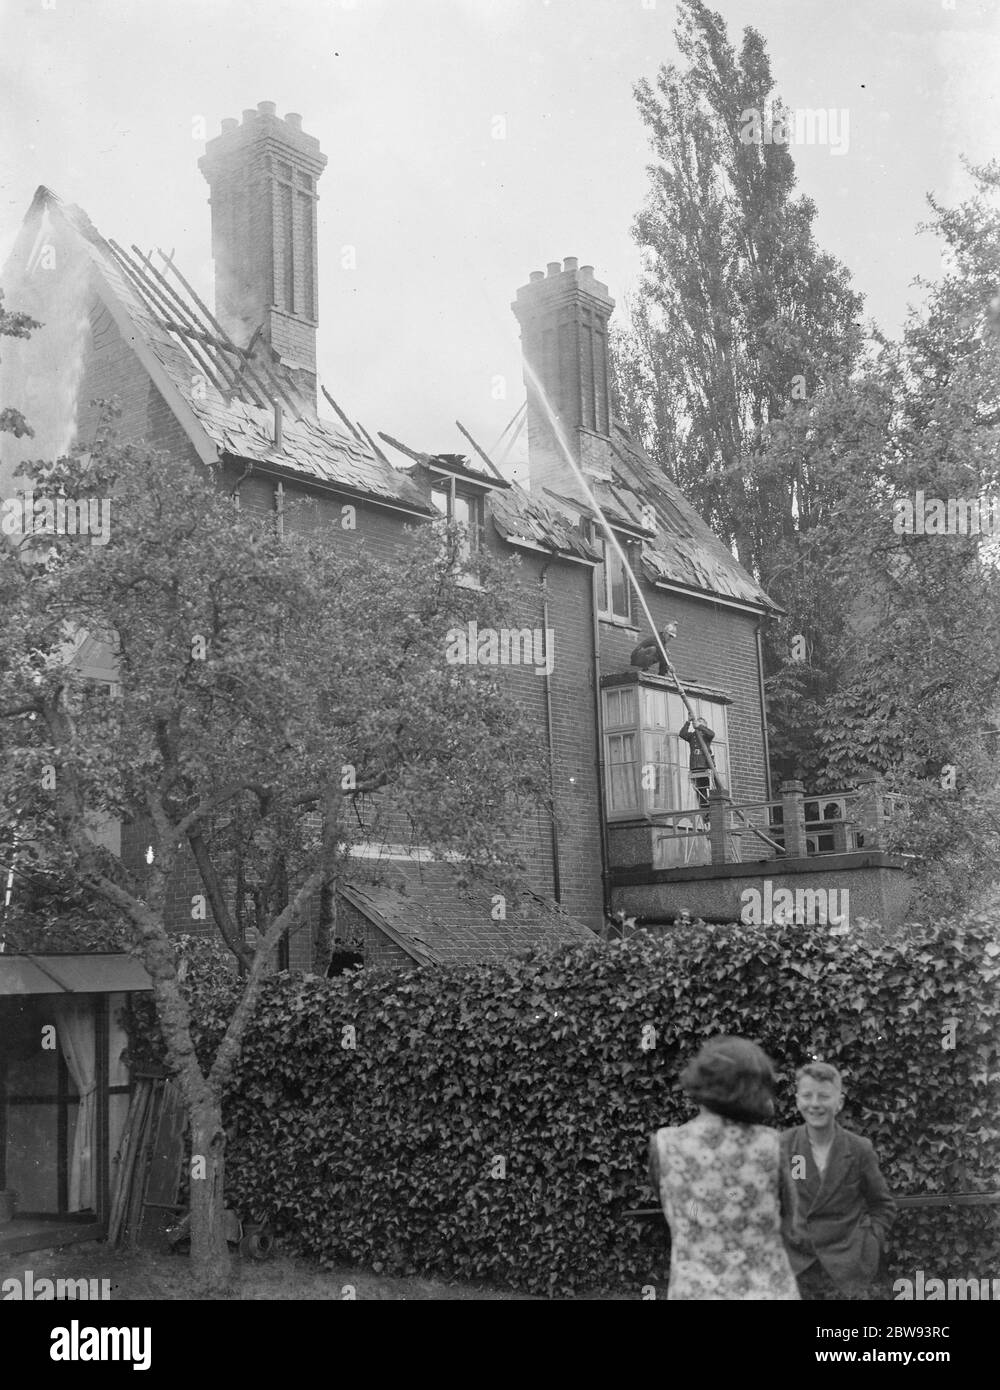 Des pompiers répondent à un incendie à Chislehurst , Kent . Pompier de l'eau dans la fenêtre supérieure du bâtiment. 1939 Banque D'Images